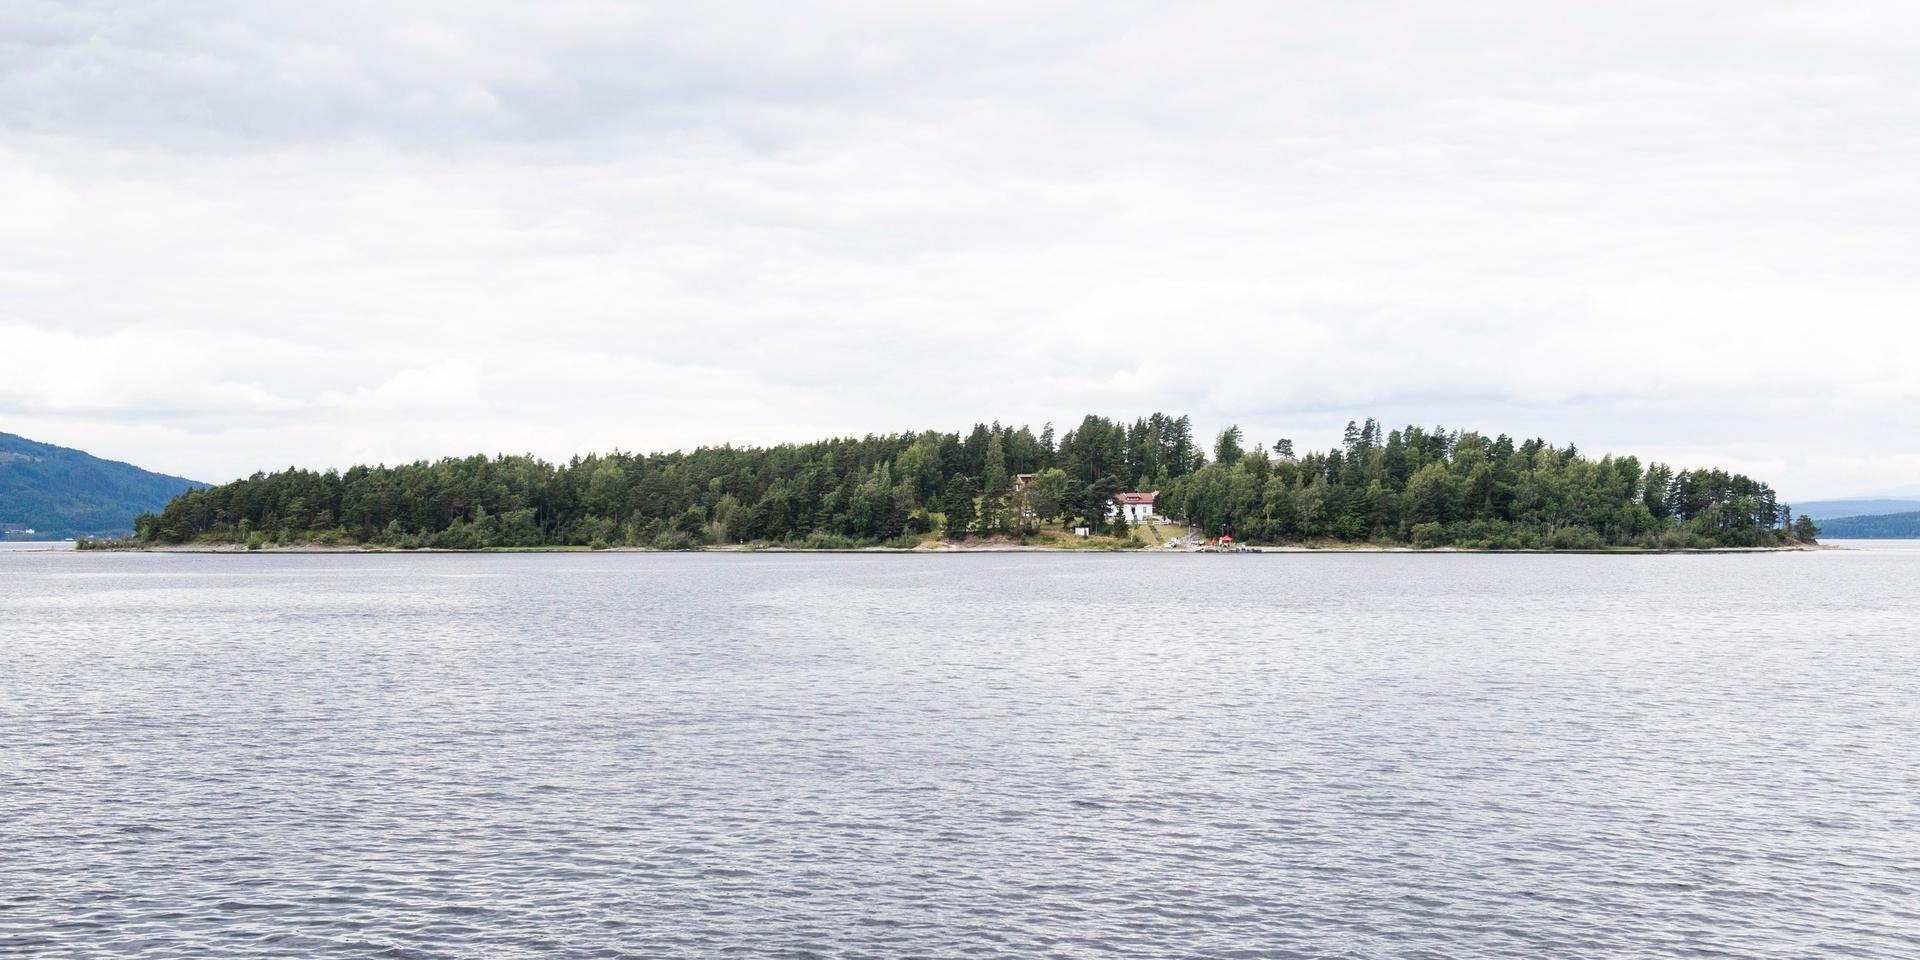 
Utøya - skådeplatsen för Breiviks massaker - är beläget i Tyrilfjorden nordväst om Oslo. 